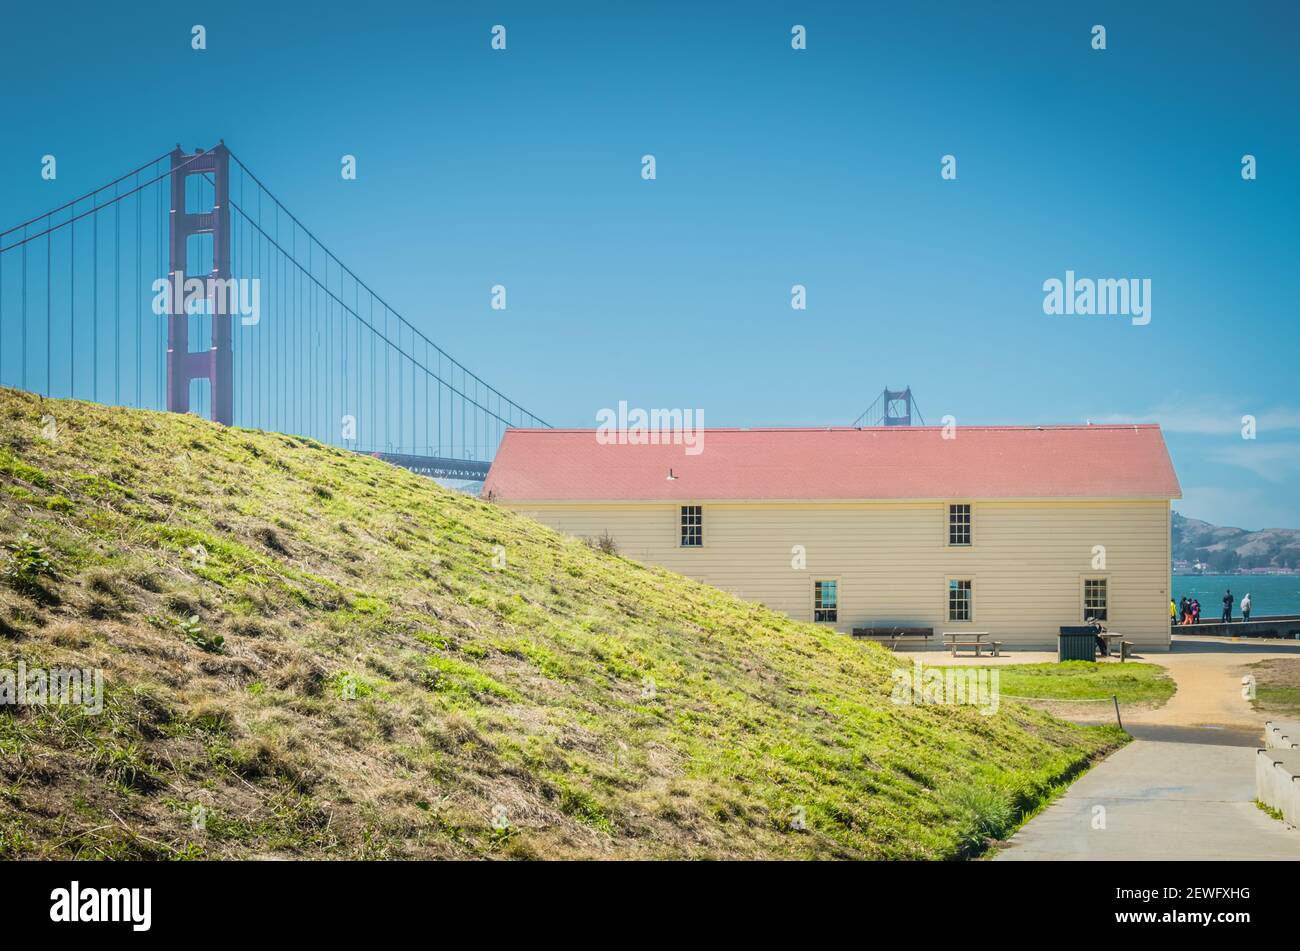 San Francisco, CA, USA - 24. Juni 2015: Sonniger Tag am Pier und Marina in San Francisco City. Die Golden Gate Bridge ist sichtbar im Hintergrund und al Stockfoto